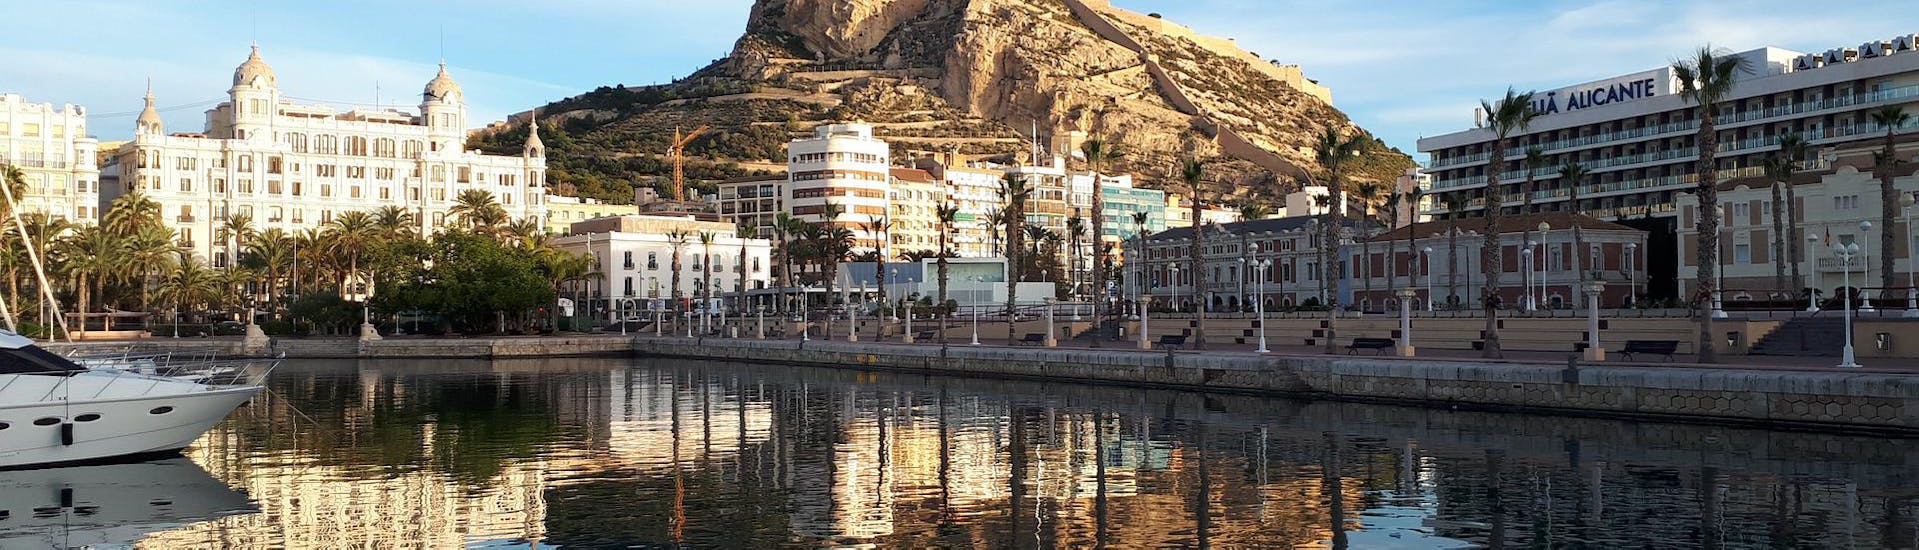 Una de las vistas que puede ver durante un alquiler de barco en Alicante (hasta 7 personas) con licencia con Samba Boats Alicante.